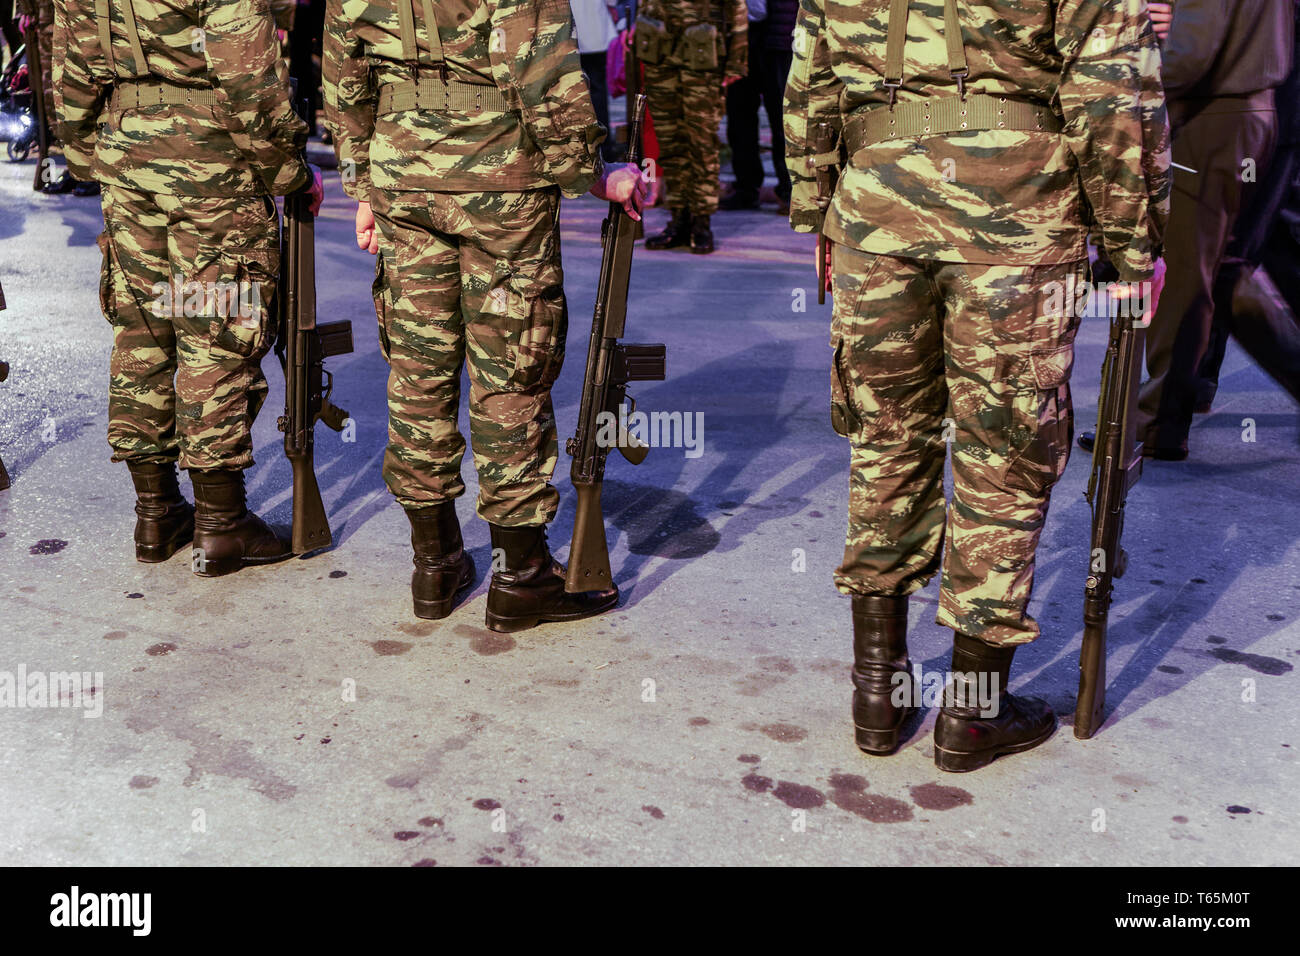 Silhouette der griechischen Streitkräfte Männer noch. Griechischen Soldaten in einem Tarnmuster combat Uniform, mit einem G3 A4 Gewehr. Stockfoto